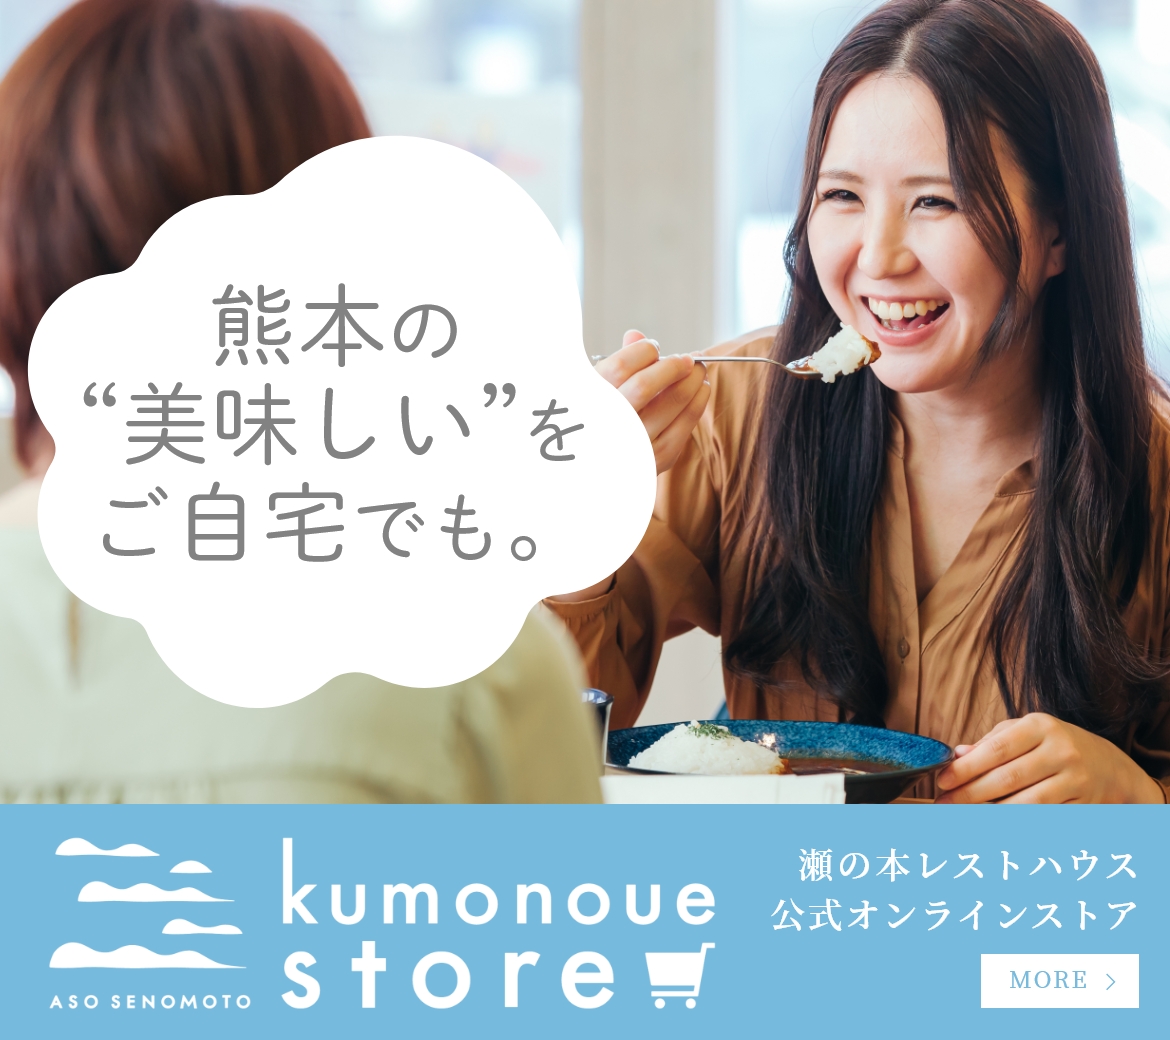 Kumonoue store 瀬の本レストハウス公式オンラインストア